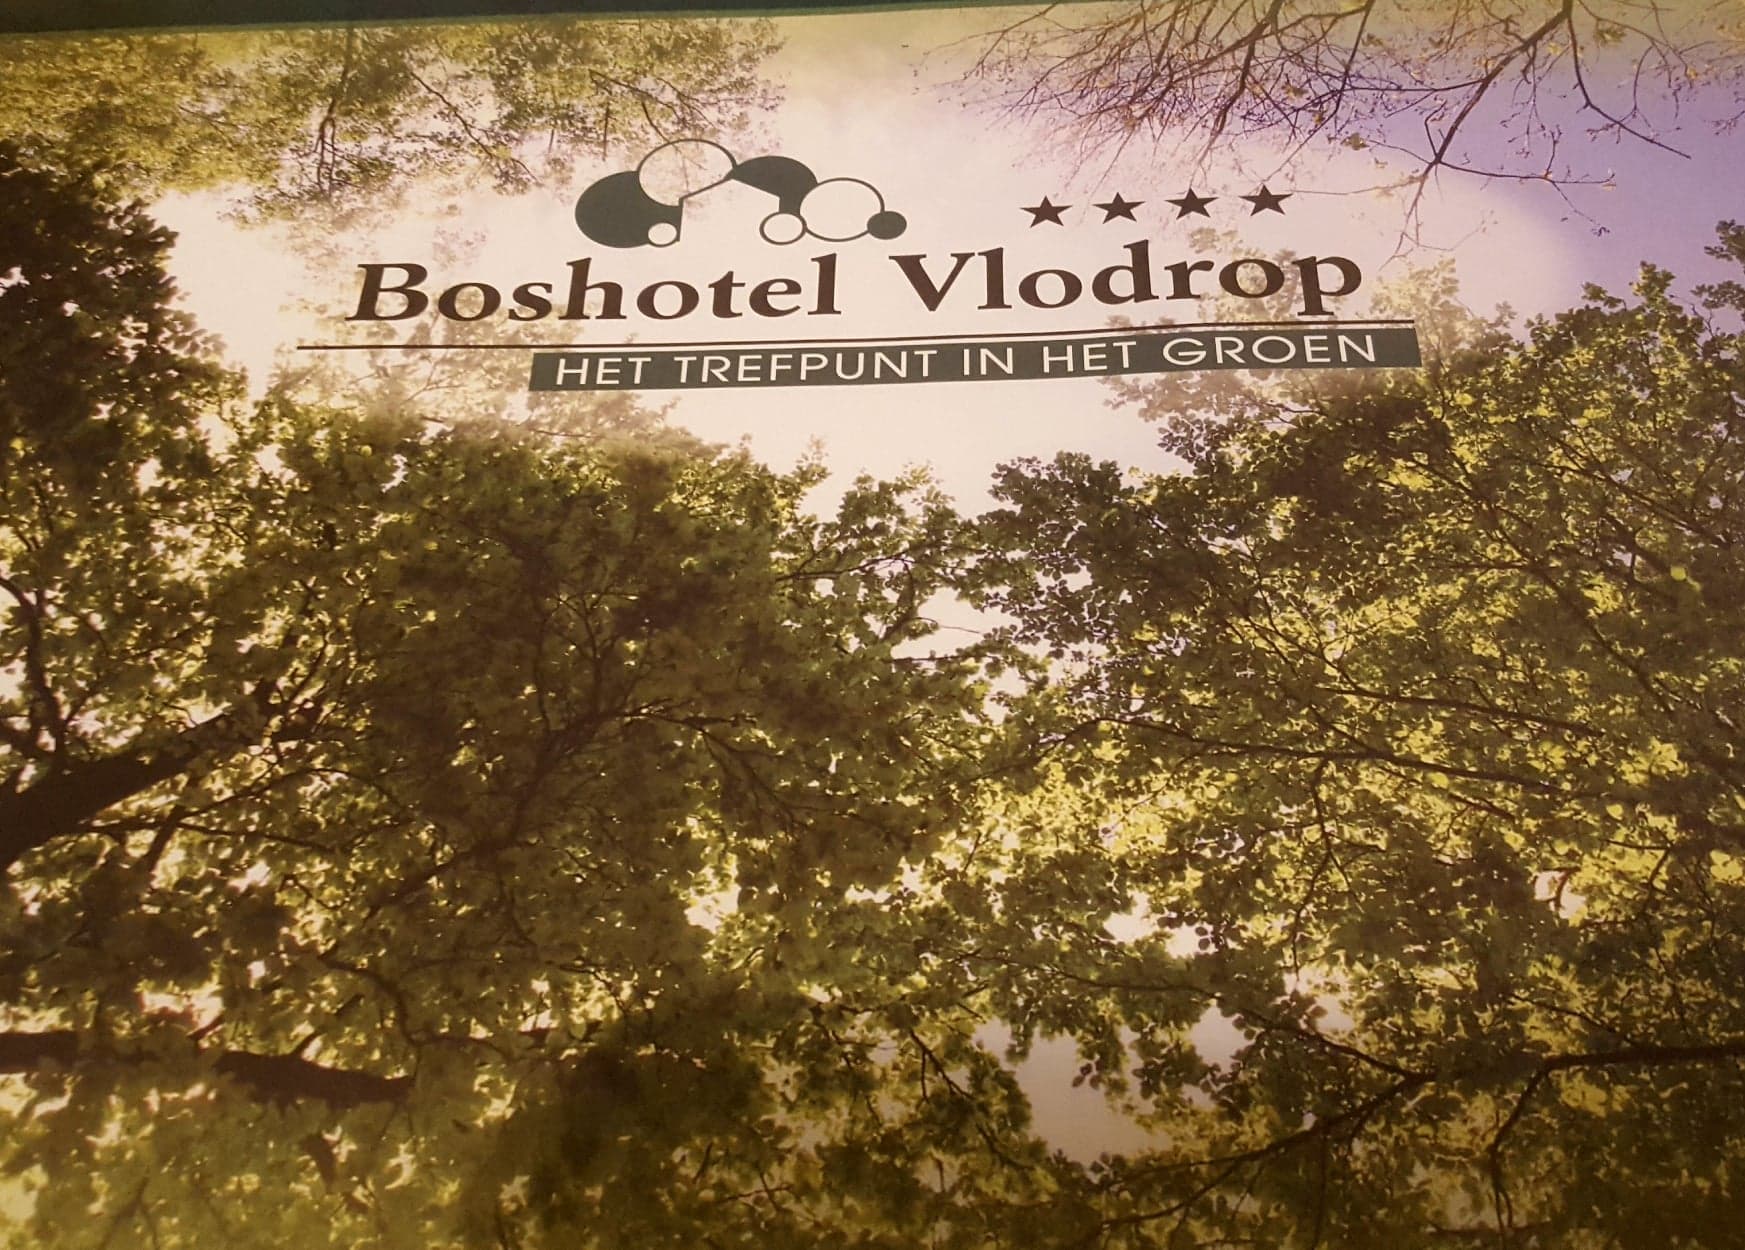 Boshotel Vlodrop was leuk!